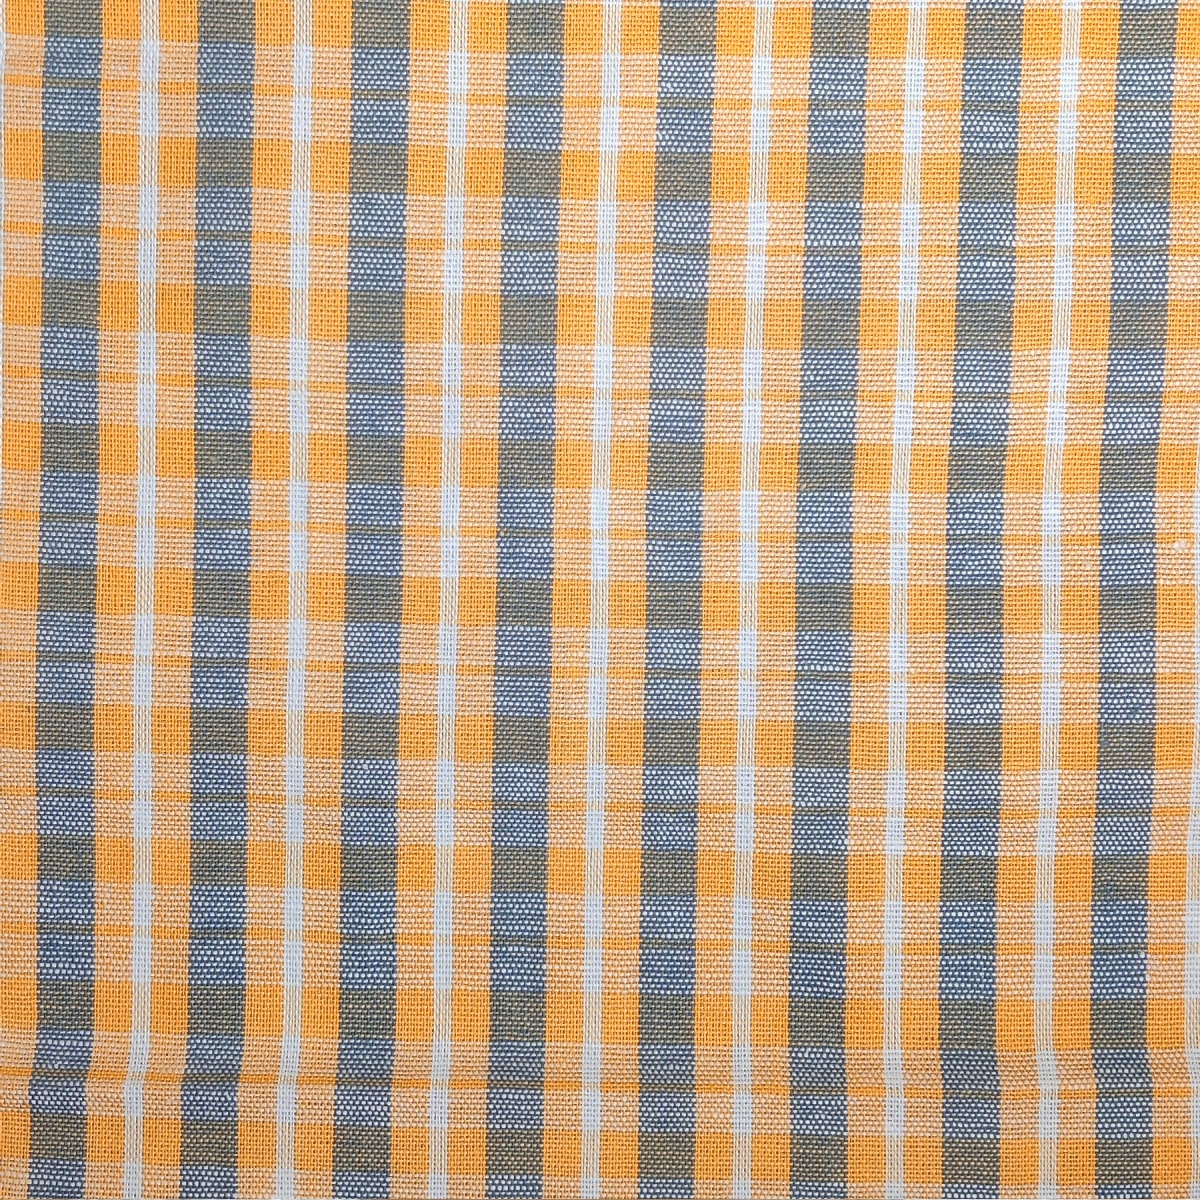 Dishcloth Fabric